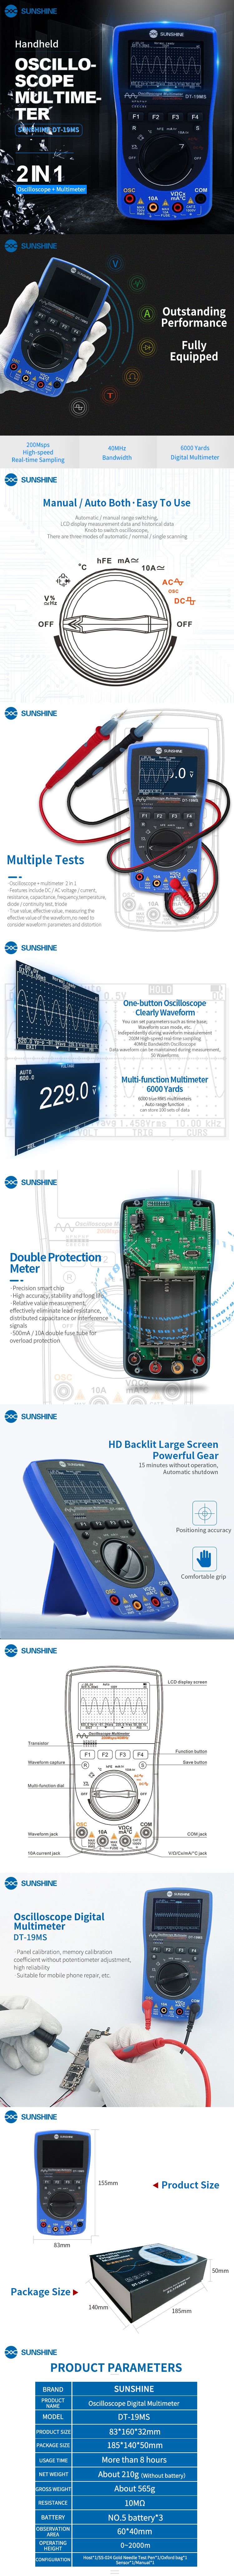 SUNSHINE-DT-19MS-2-in-1-Handheld-Oscilloscope-Multimeter-For-Mobile-Phone-Repair-Multifunction-LCD-D-1624025